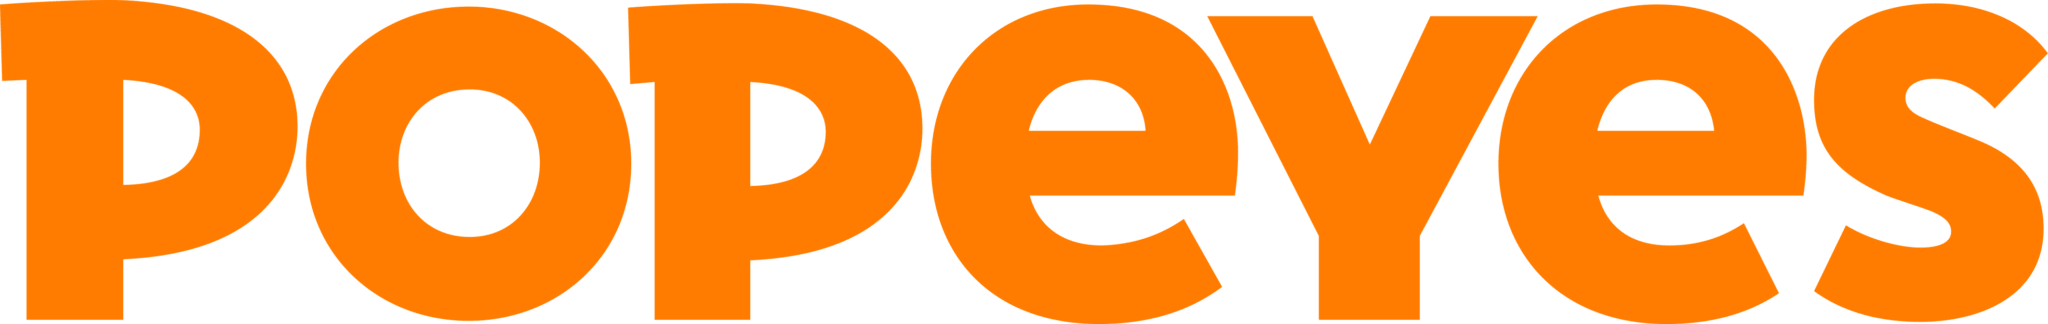 Popeyes_Logo_2020.svg